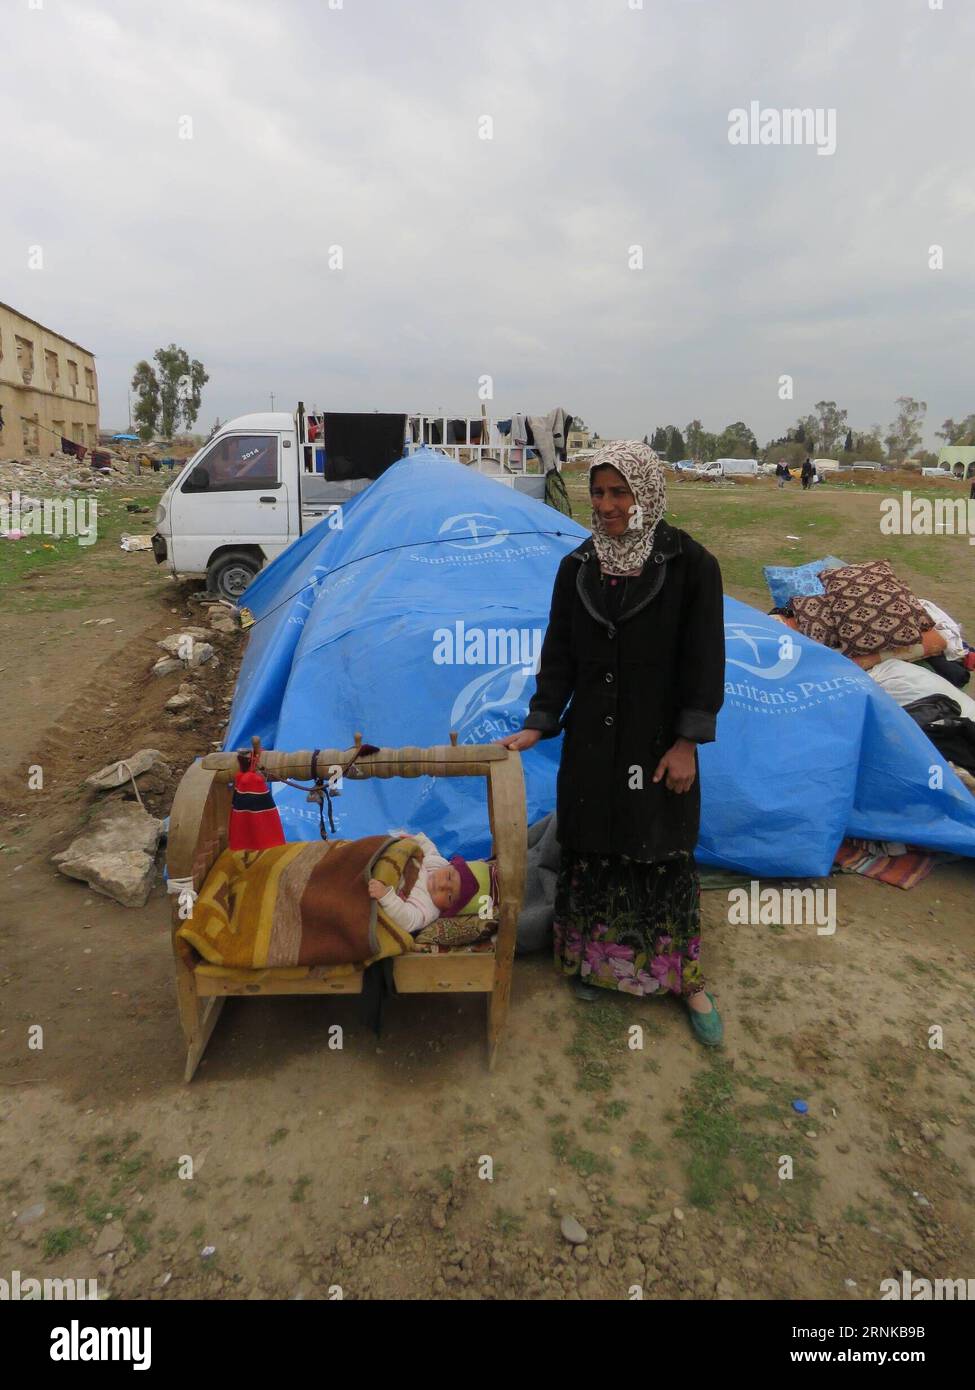 (170320) -- MOSSOUL, 19 mars 2017 -- Une femme s'occupe de son fils de six mois au camp de hammam Aleel, en Irak, le 19 mars 2017. À environ 20 km au sud de Mossoul, le camp de hammam Aleel est une plaque tournante importante pour les civils de Mossoul qui doivent être déplacés. Selon un responsable du camp, plus de 35 000 personnes vivaient ici au plus fort, et environ 10 000 personnes sont relocalisées ici à l'heure actuelle.) (dtf) IRAK-MOSSOUL-HAMMAM ALEEL CAMP-RÉFUGIÉS KhalilxDawood PUBLICATIONxNOTxINxCHN Mossoul Mars 19 2017 une femme prend soin de son vieux soleil de six mois AU camp hammam Irak LE 19 2017 mars À environ 20 km au sud de Mossoul hammam Cam Banque D'Images